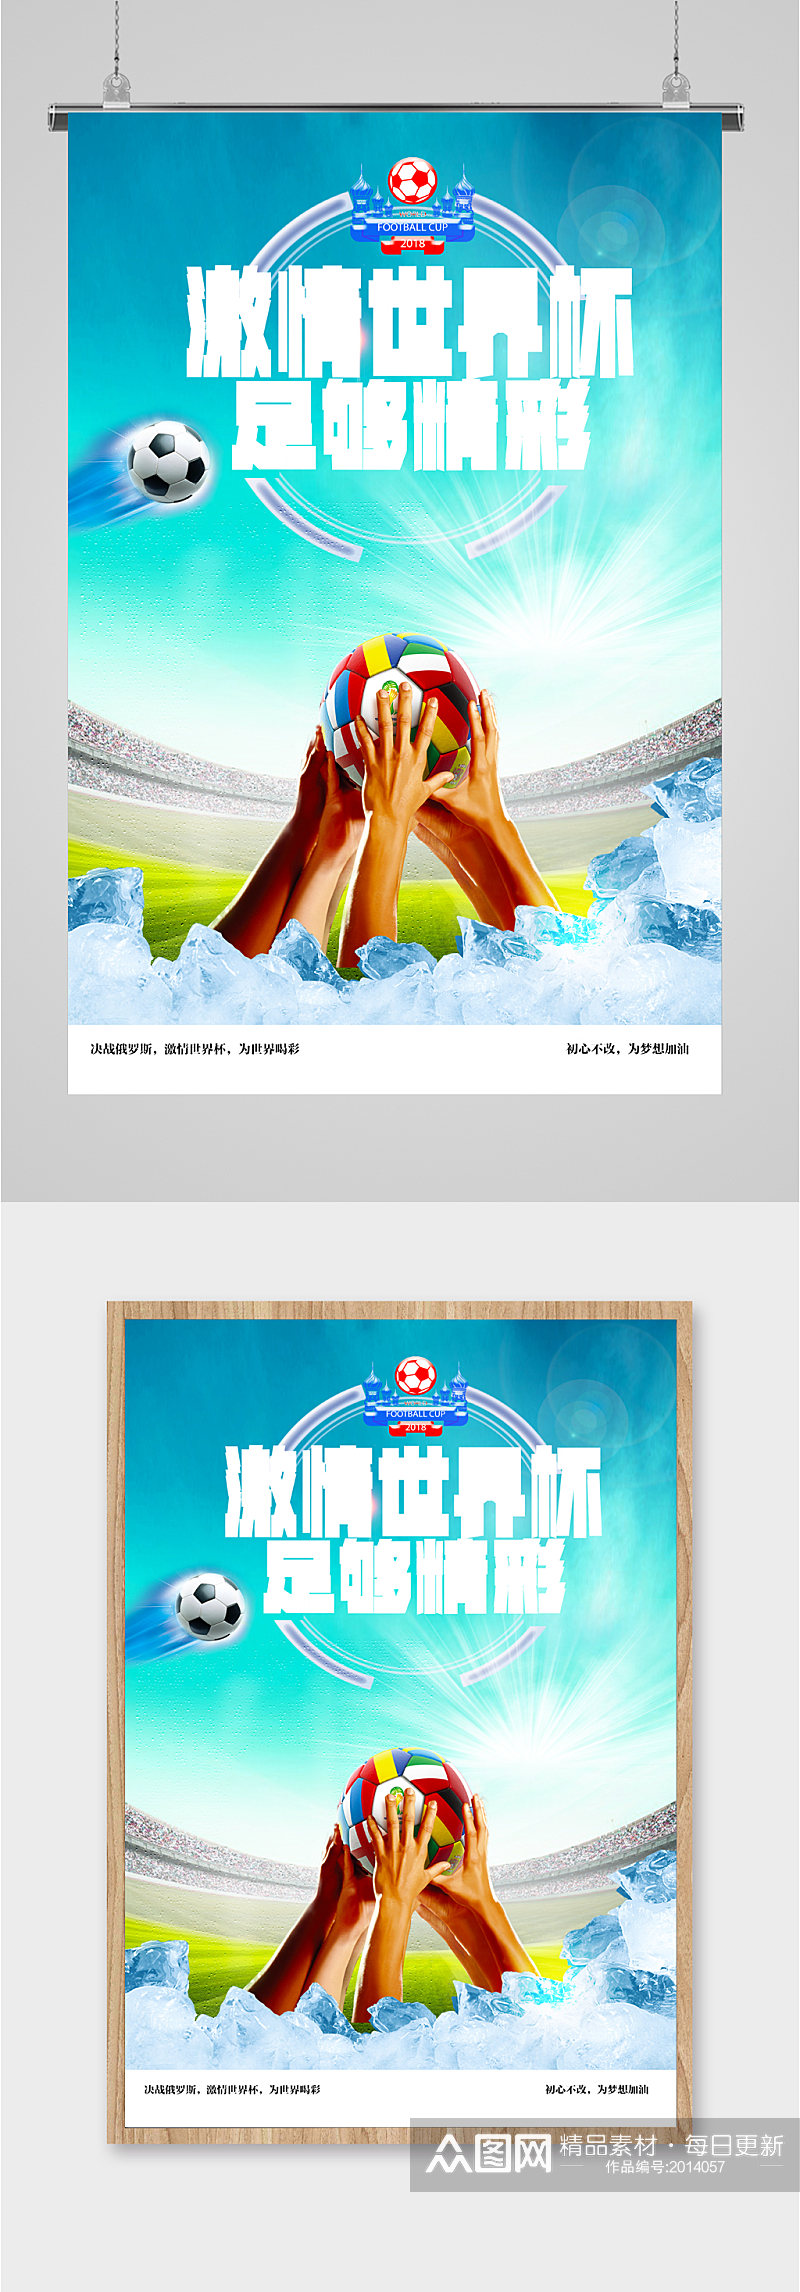 激情世界杯宣传海报素材